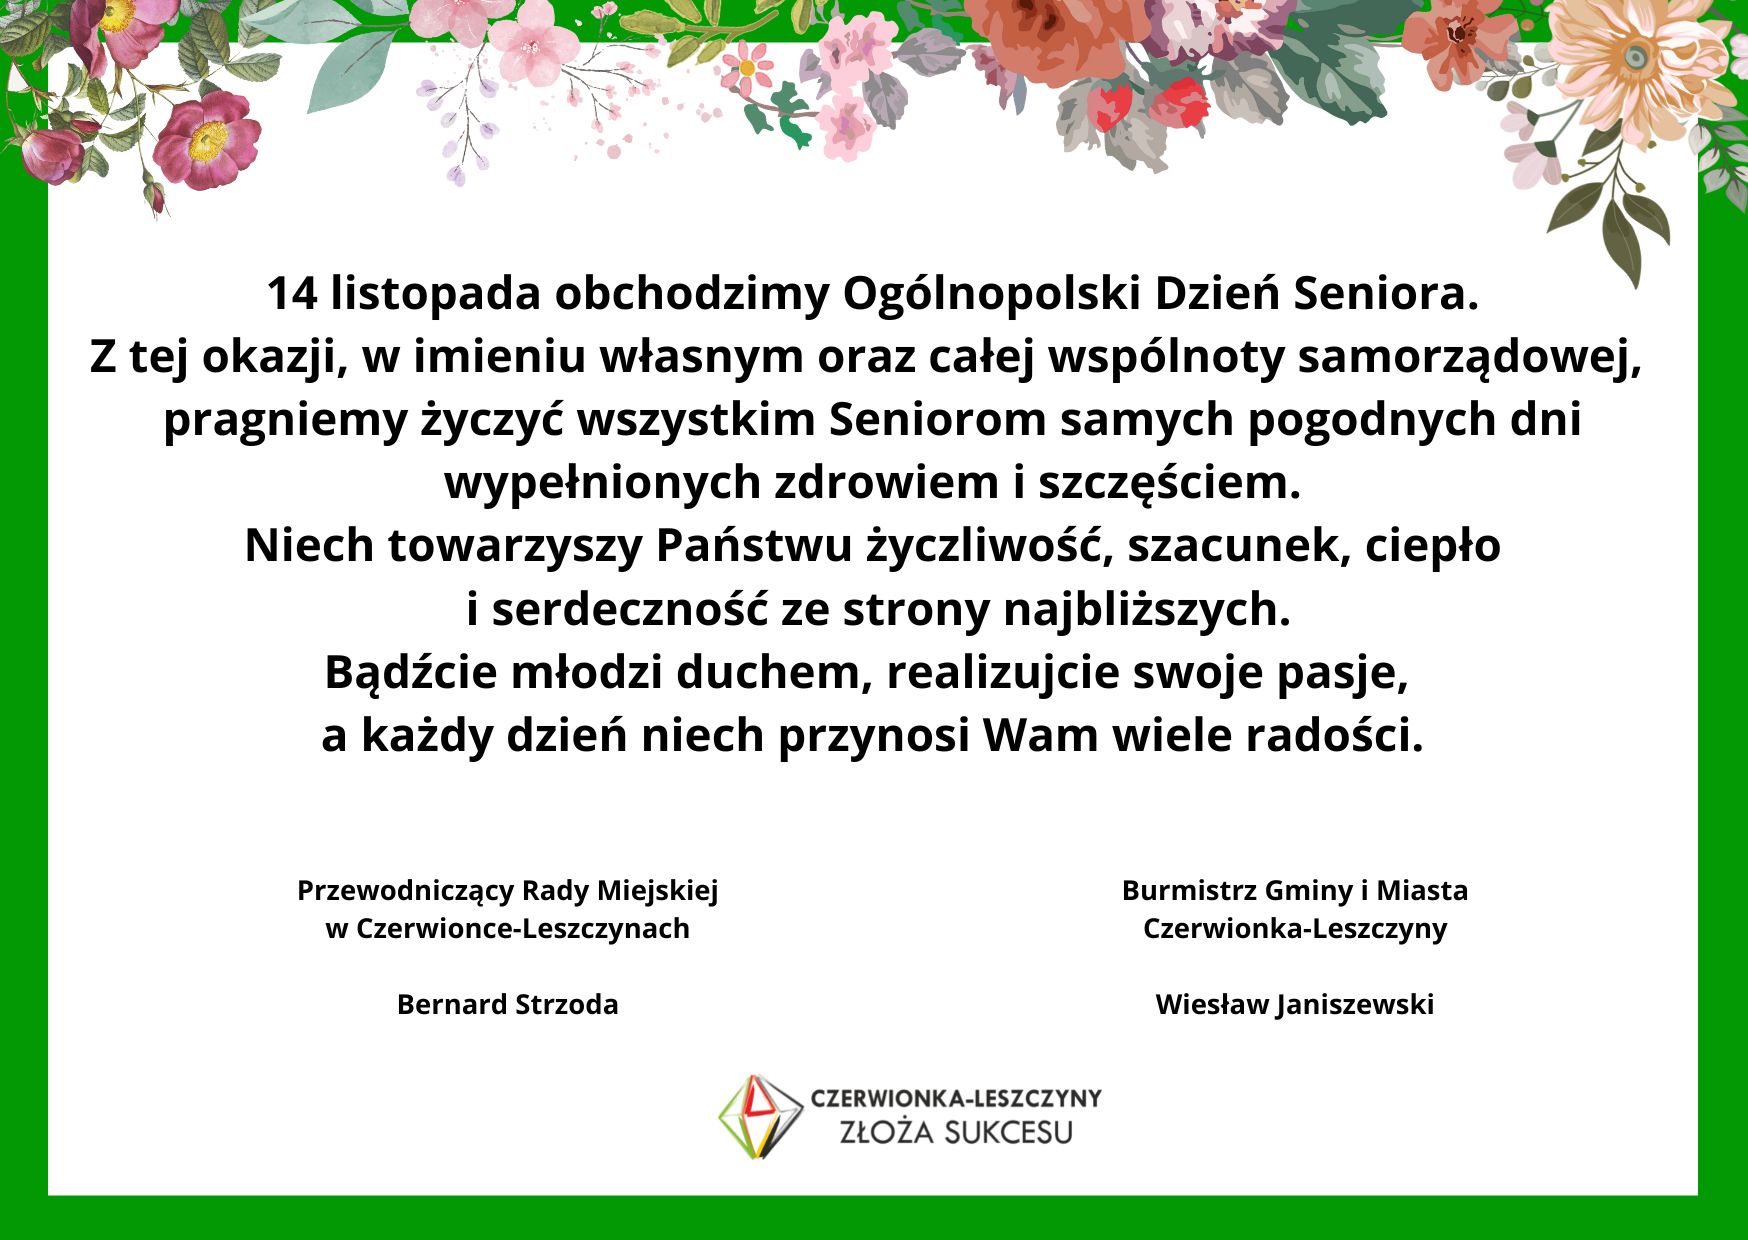 Życzenia z okazji Ogólnpolskiego Dnia Seniora